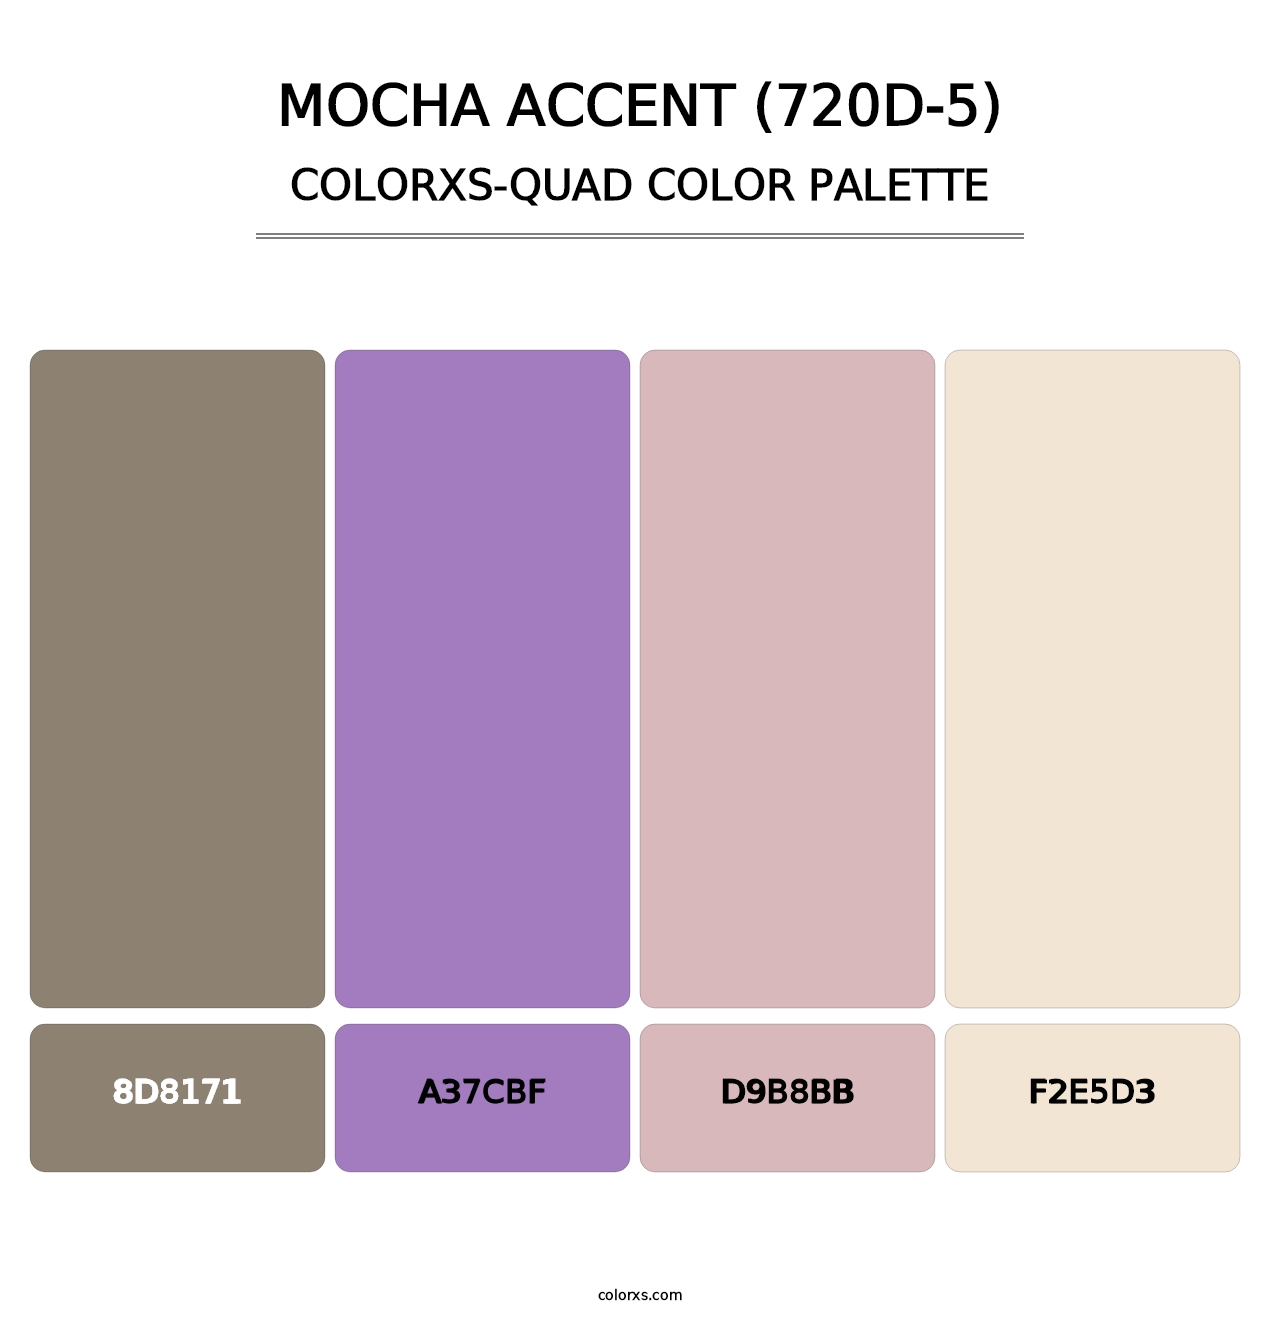 Mocha Accent (720D-5) - Colorxs Quad Palette